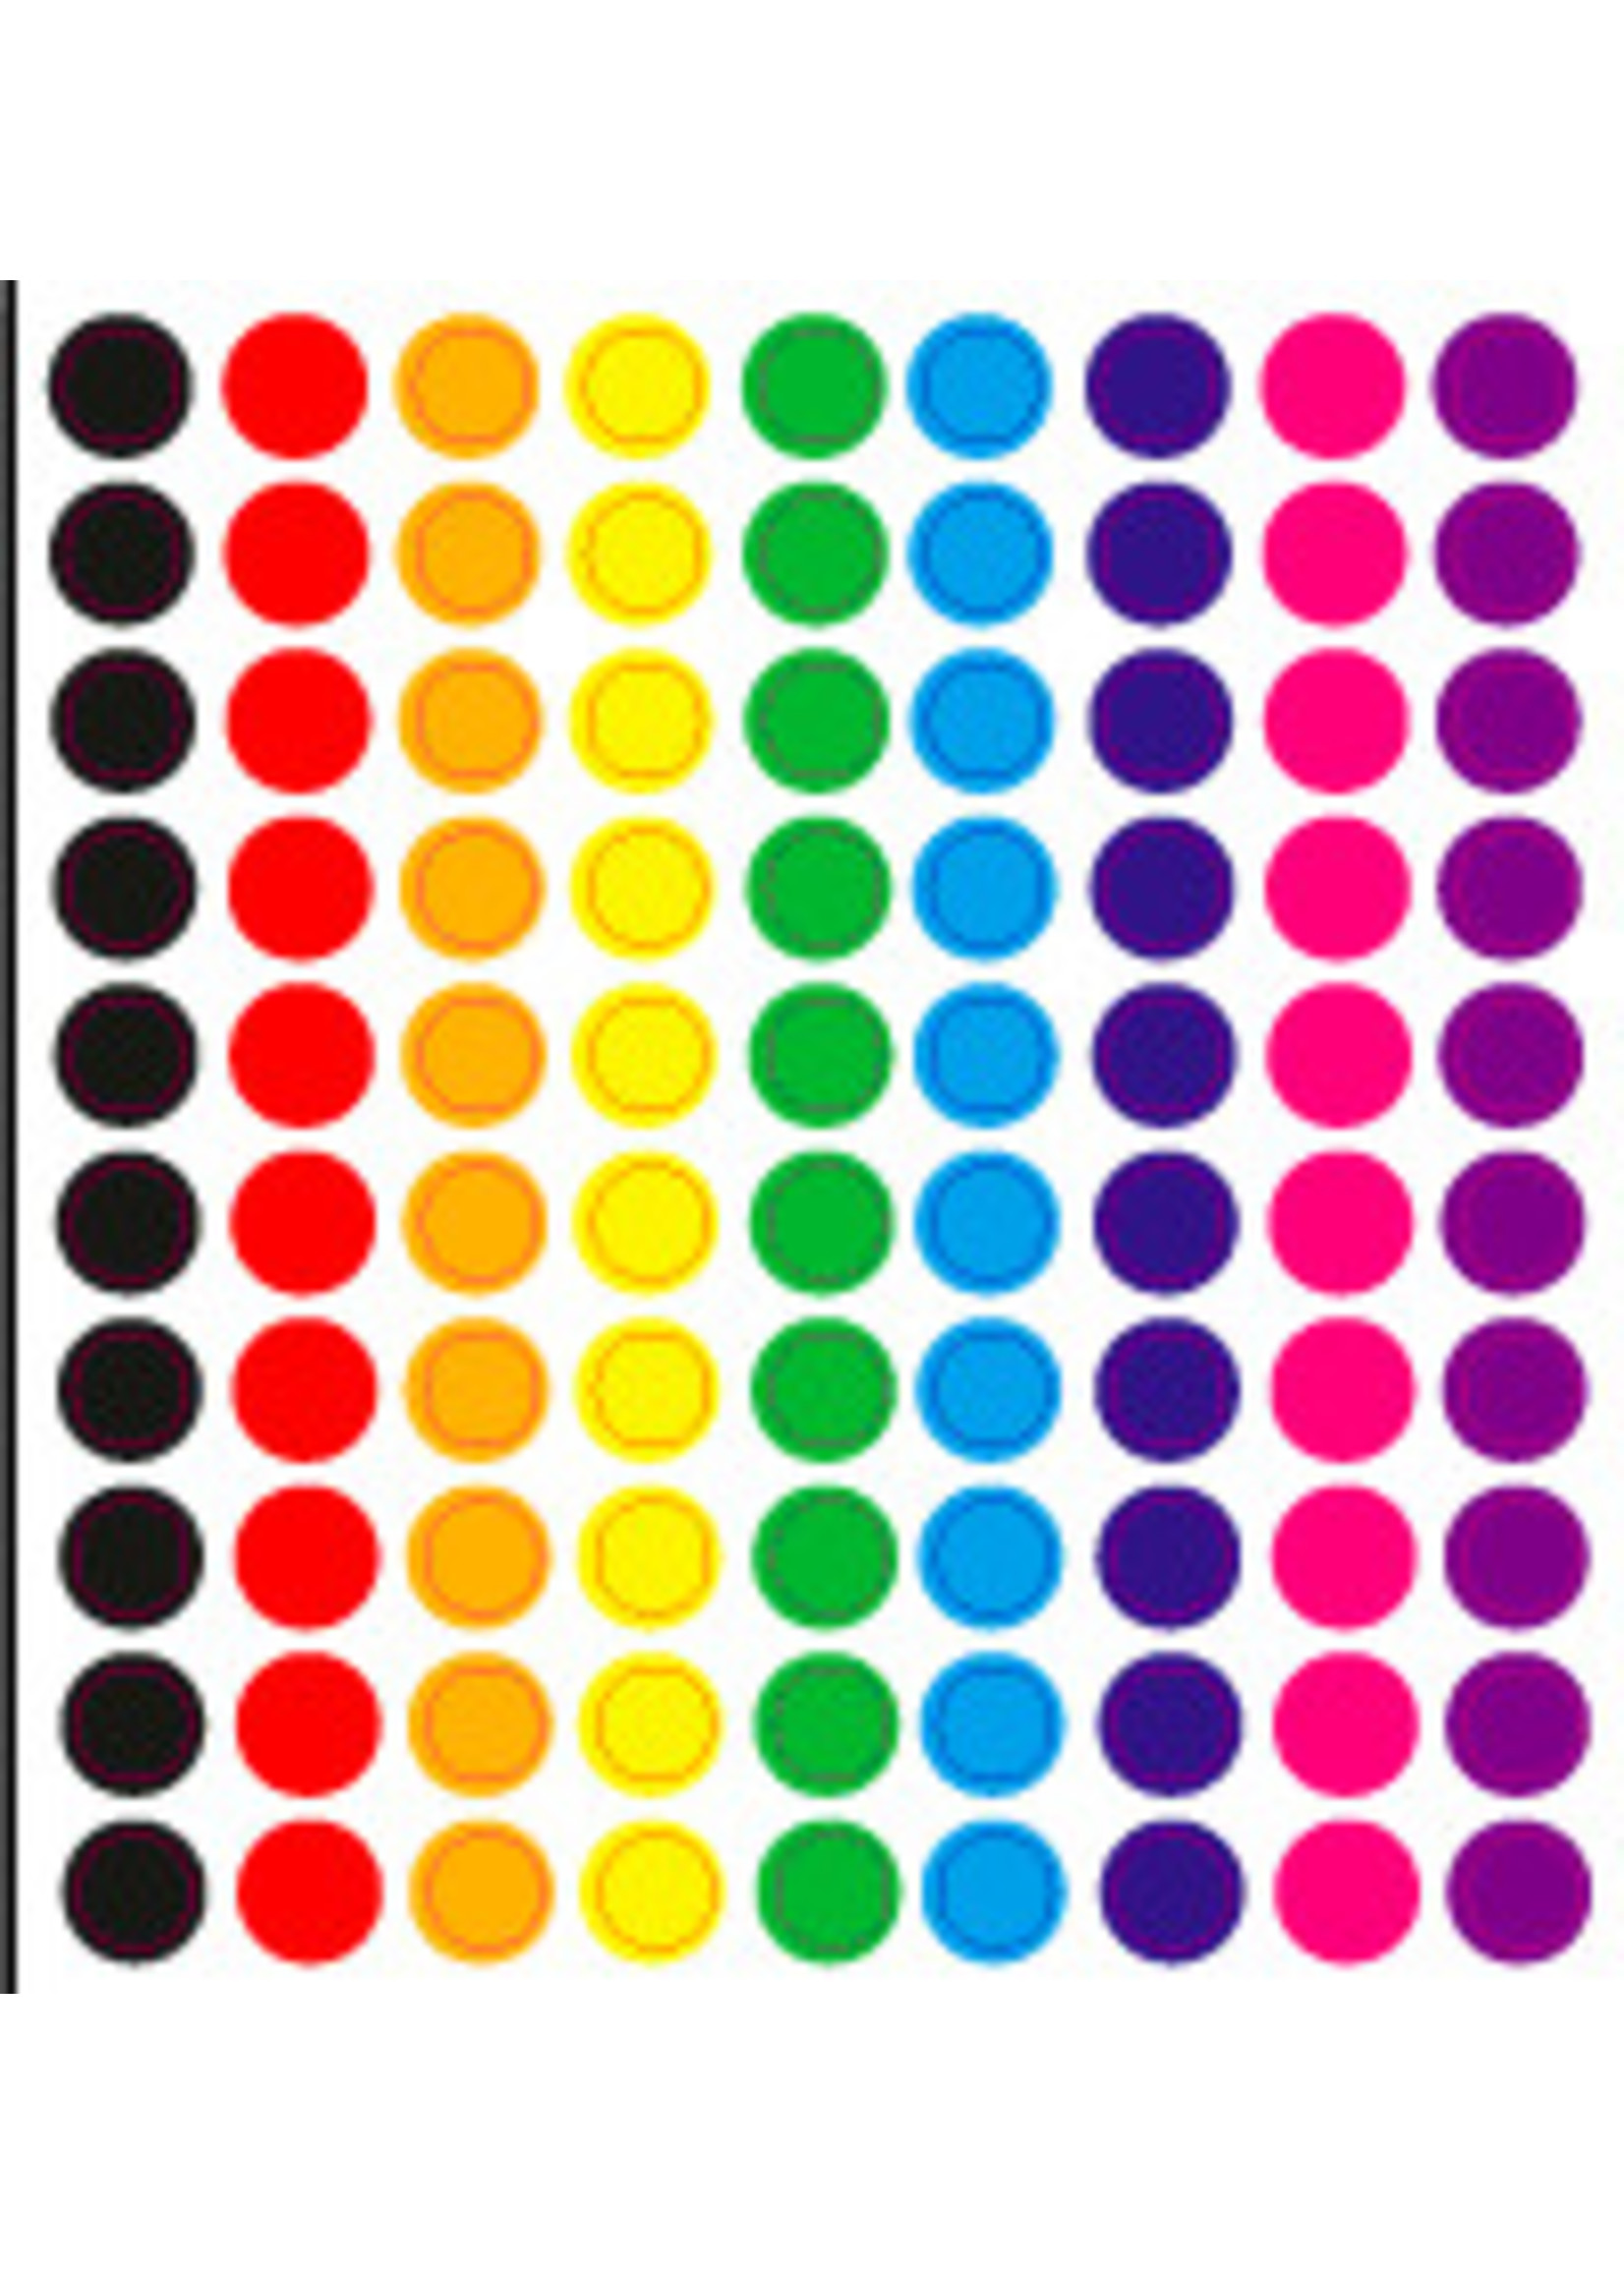 100 stickertjes in cirkelvorm in verschillende kleuren